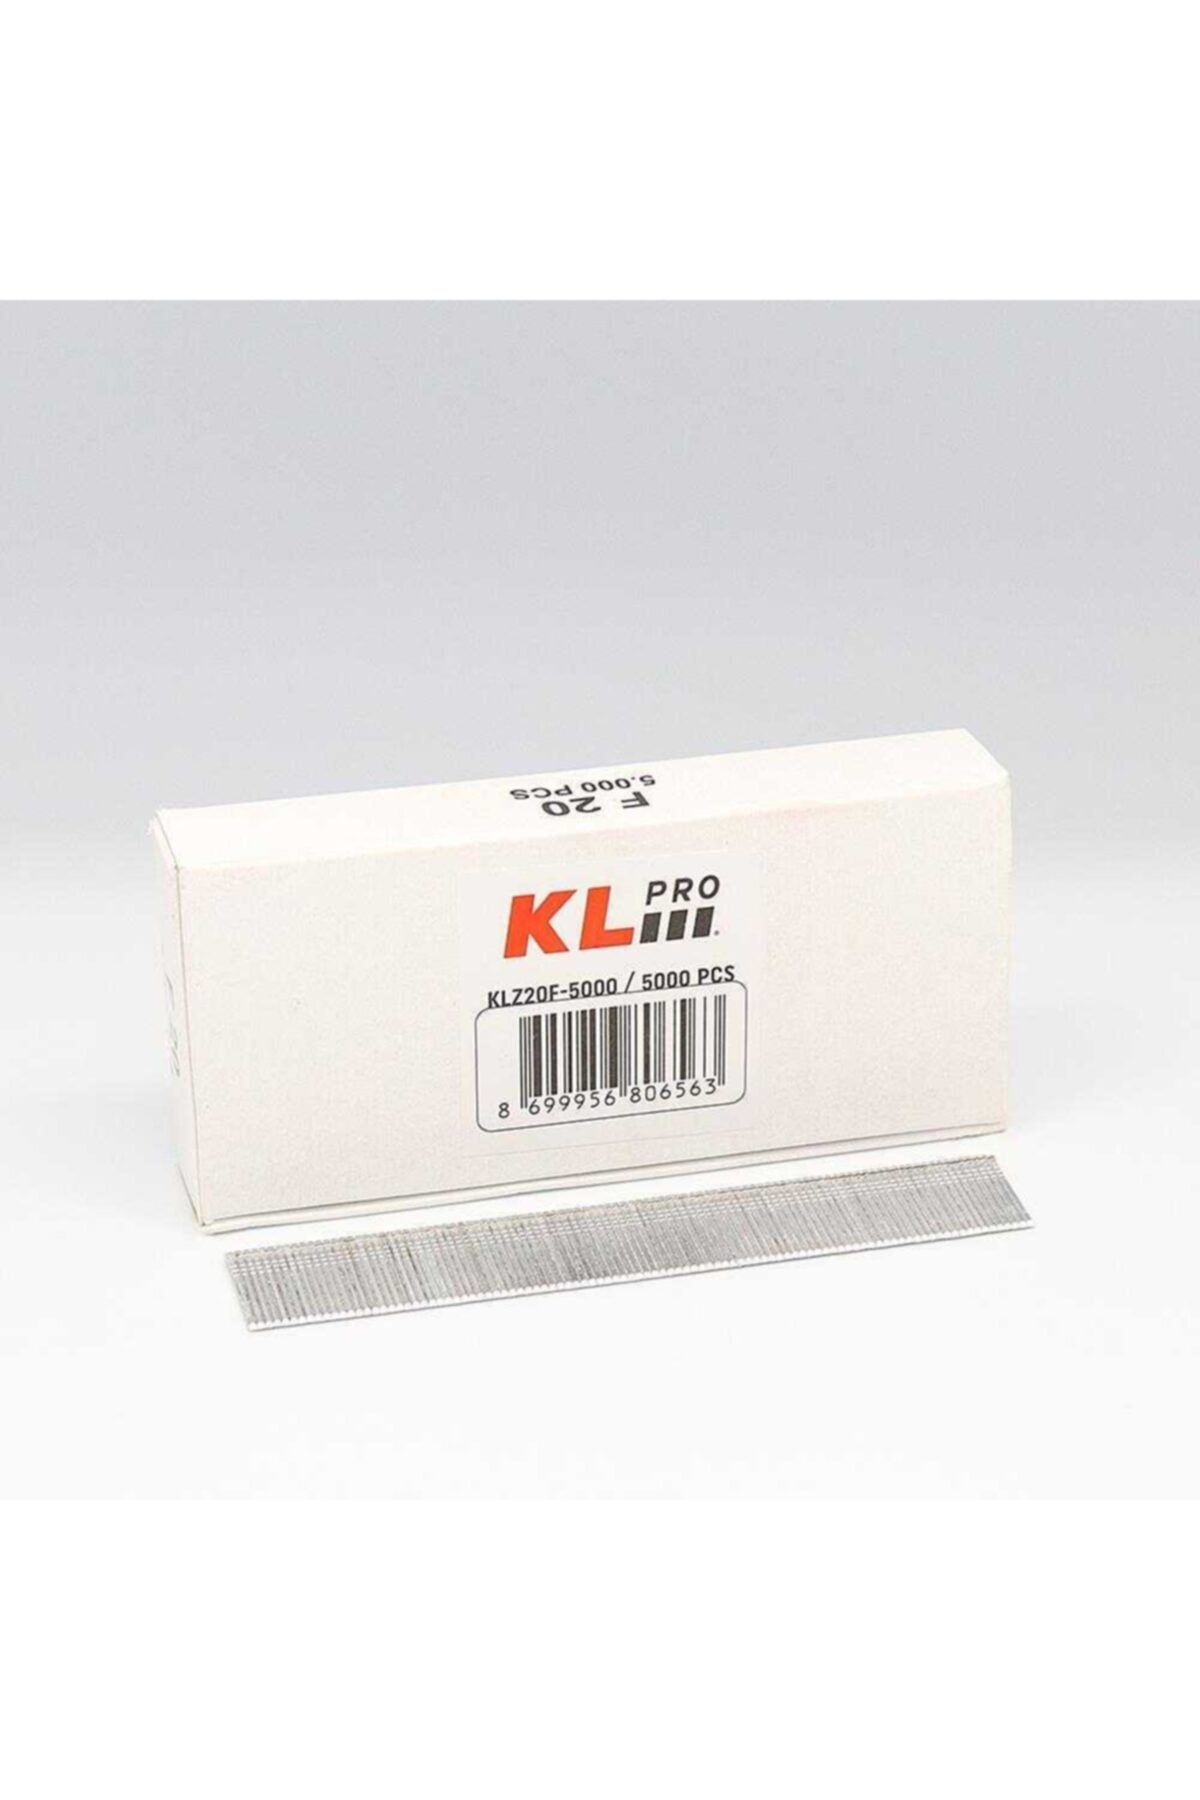 KLPRO Klz20f-5000 20mm 5000 Adet Çivi